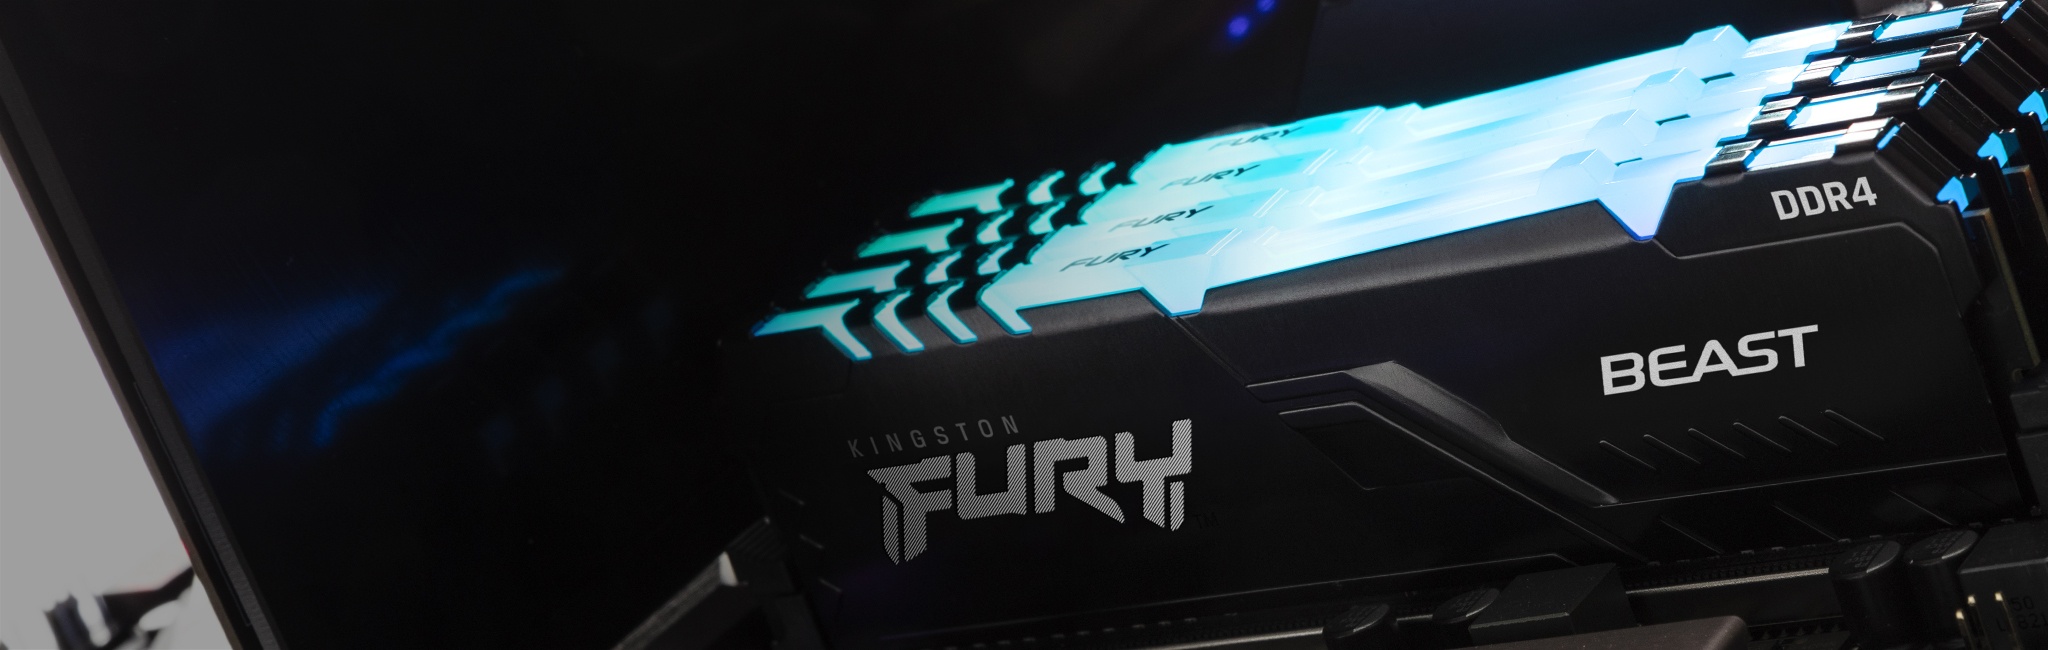 電腦上安裝有 Kingston FURY Beast RGB，模組頂端發出藍色光線